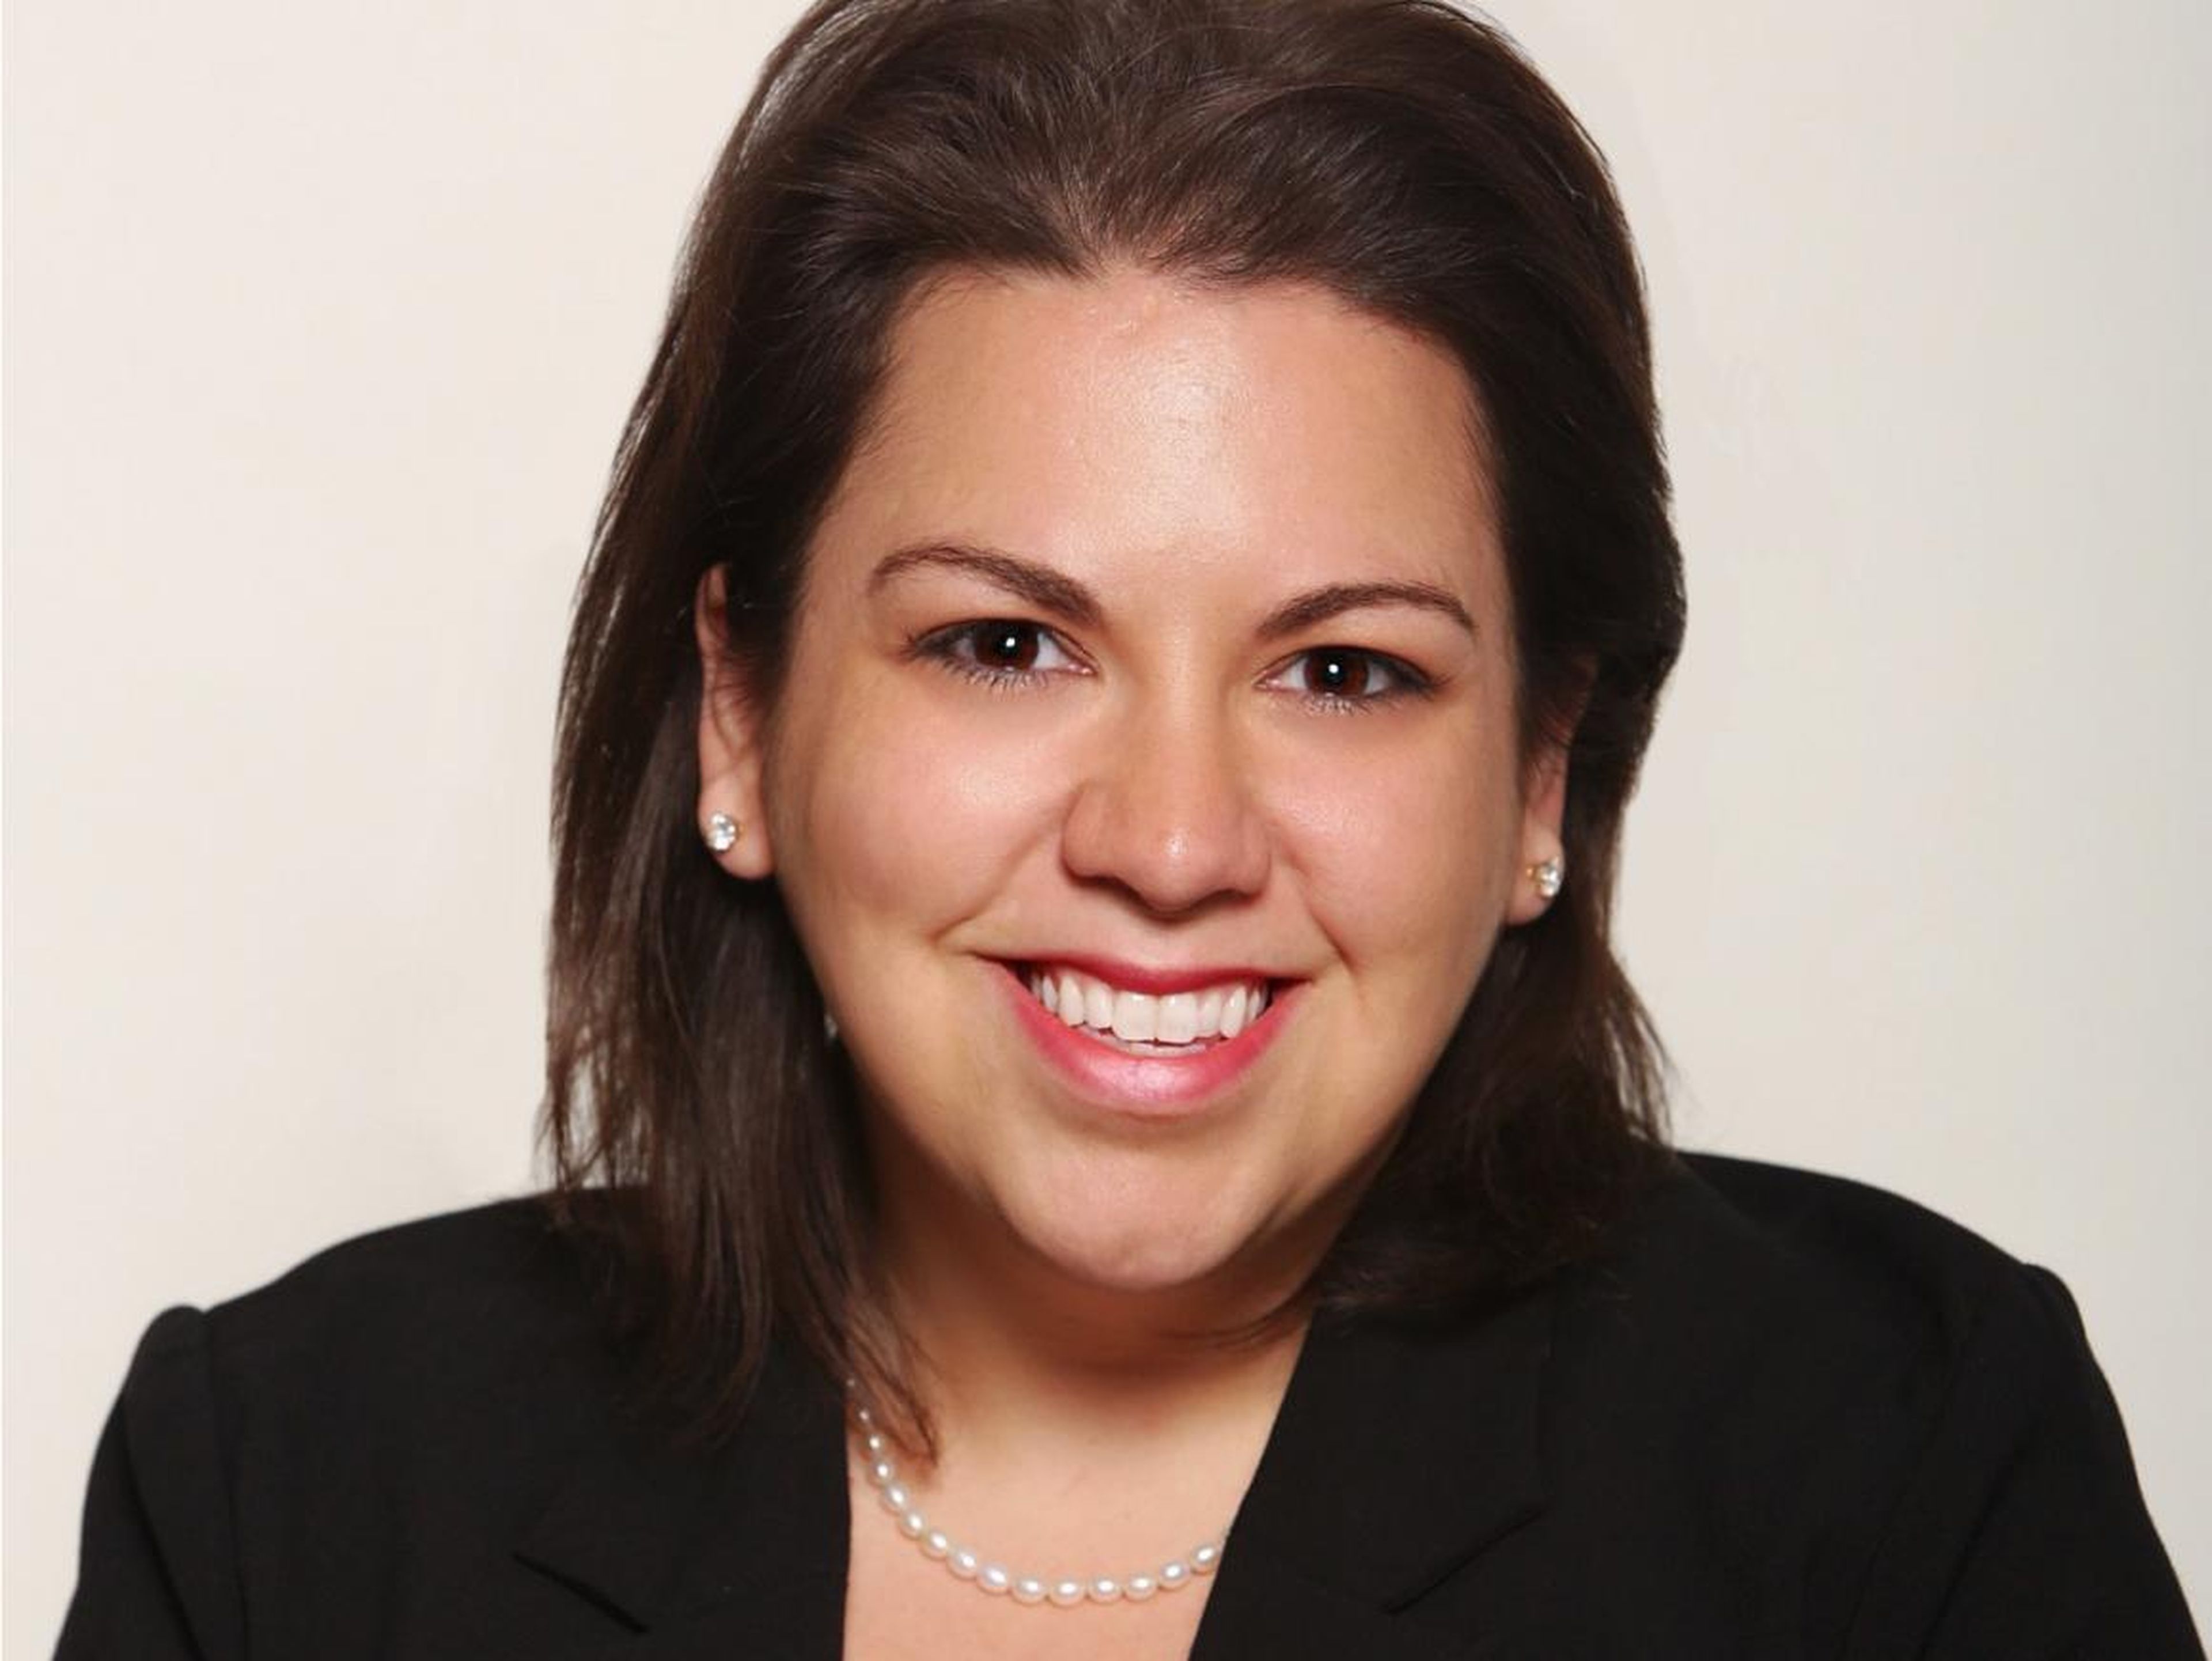 Lauren Anastasio es planificadora financiera certificada en SoFi, una compañía de finanzas personales.